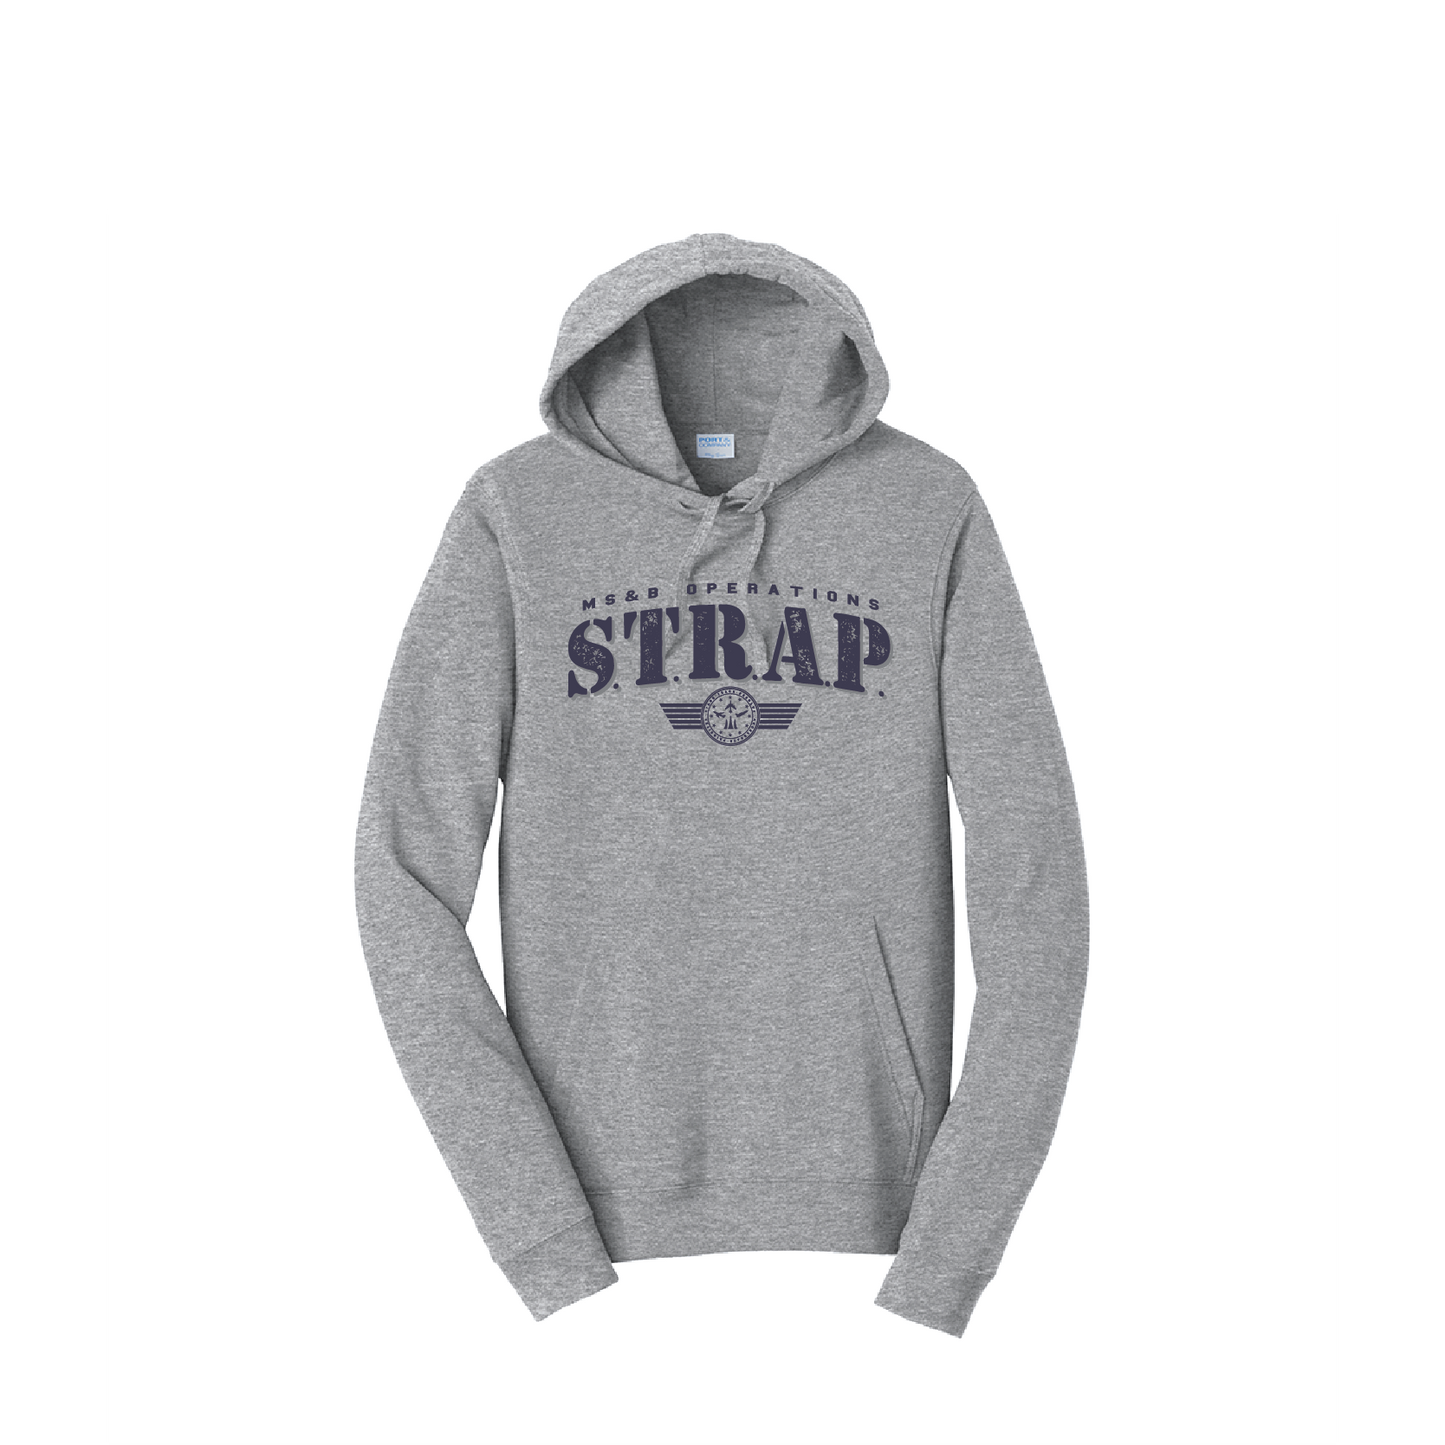 STRAP Team - Vintage Hoodie